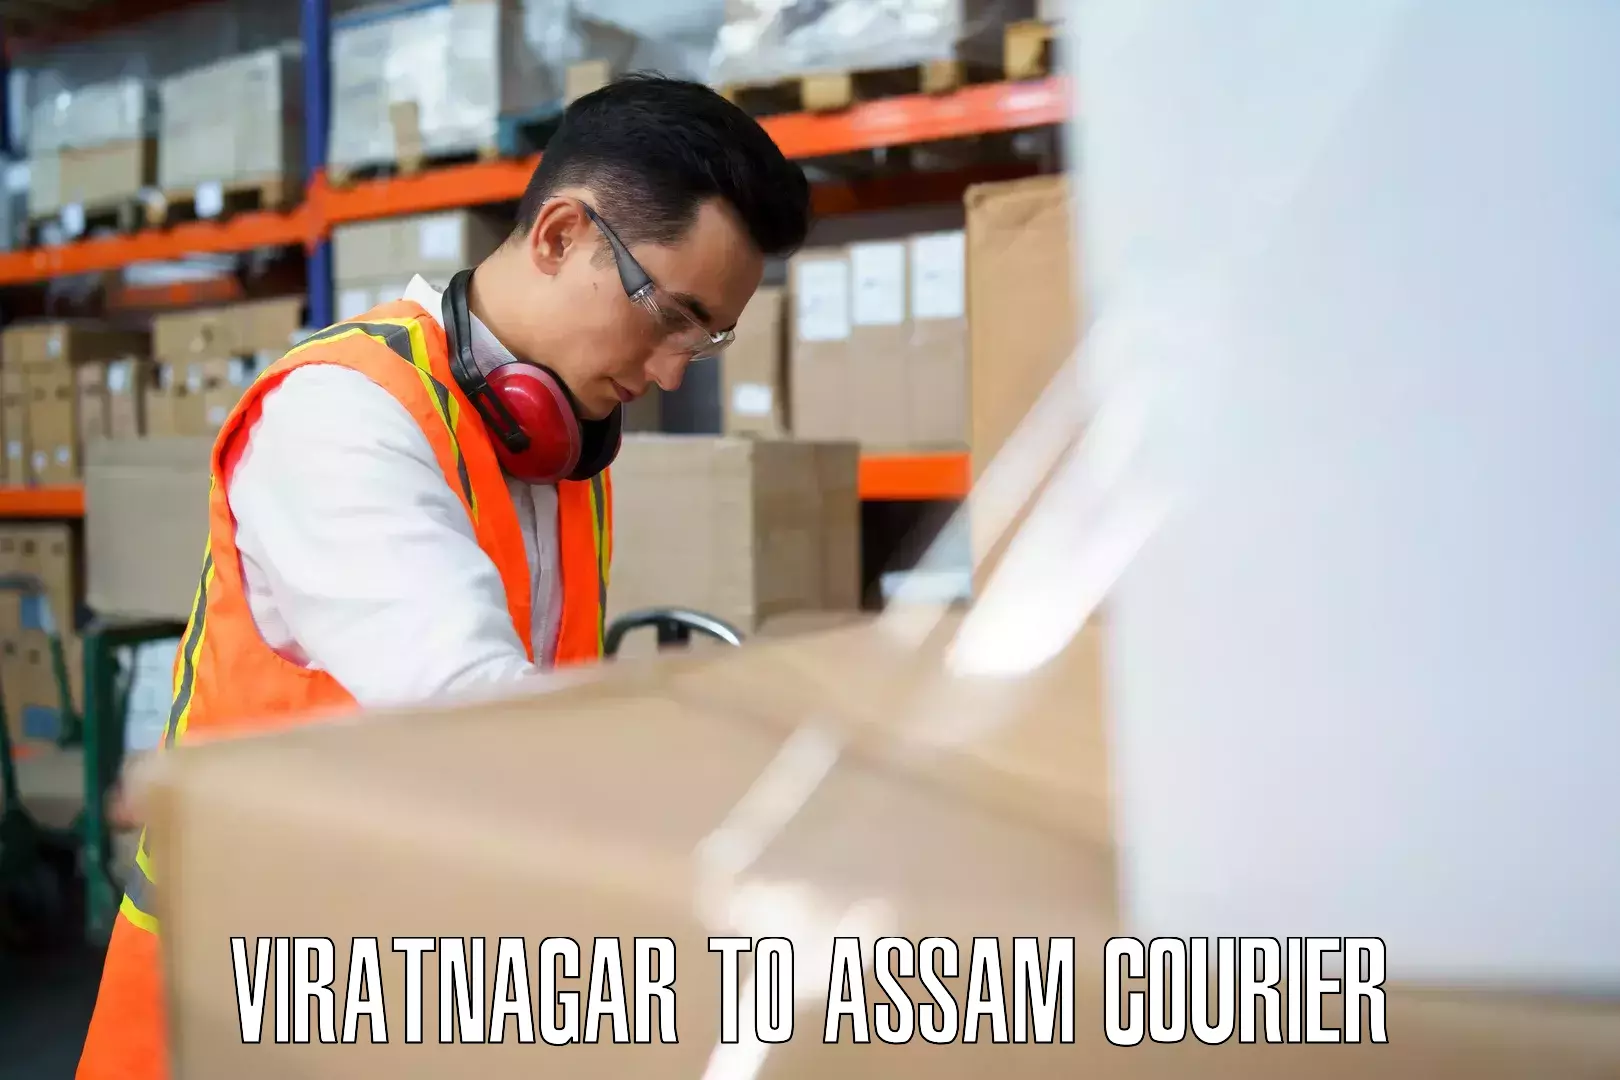 Personal effects shipping Viratnagar to Jorabat